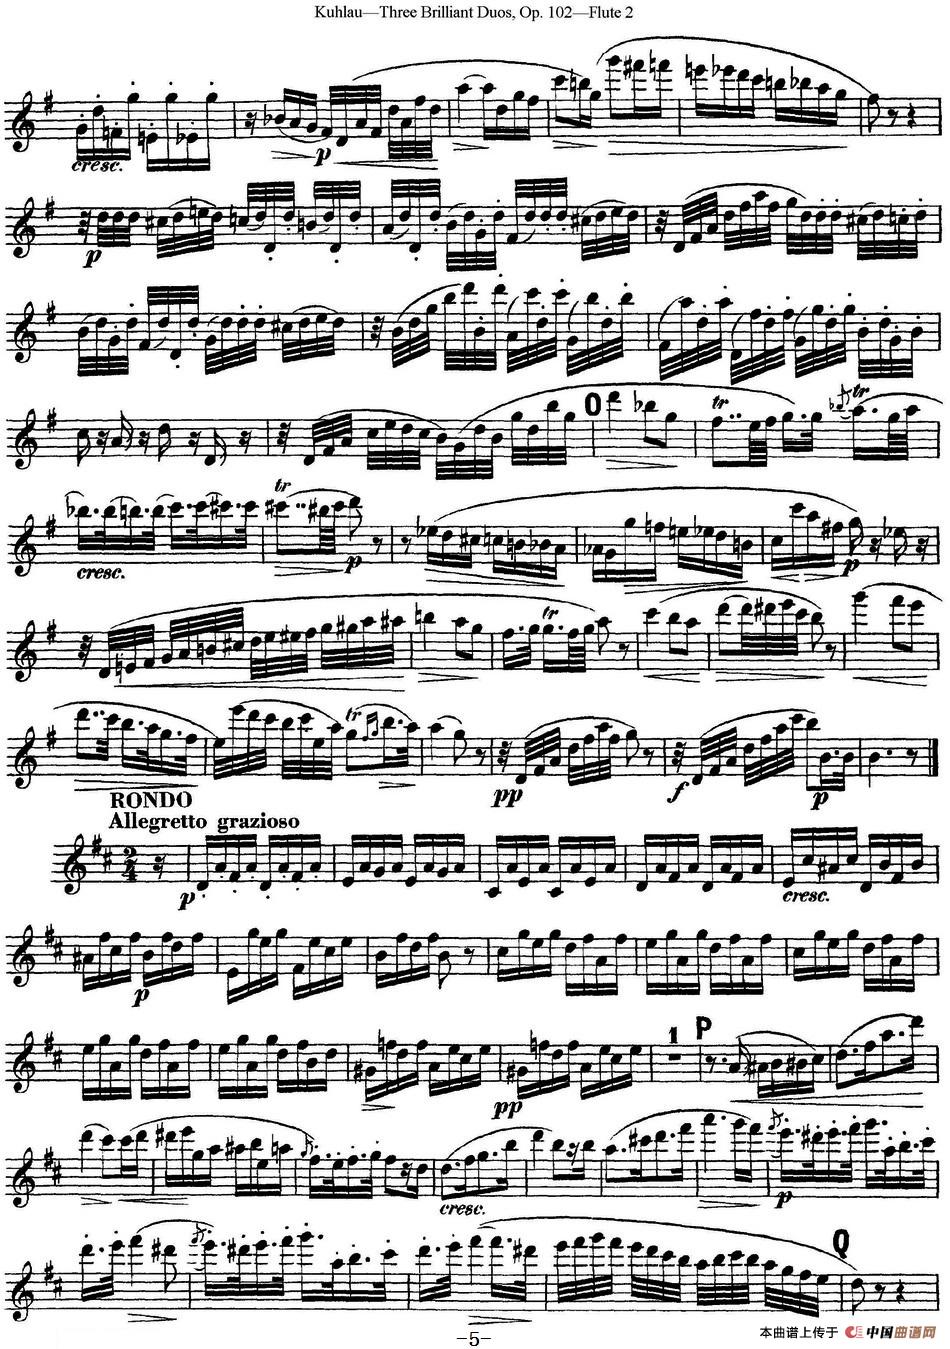 库劳长笛二重奏练习三段OP.102——Flute 2（NO.1）